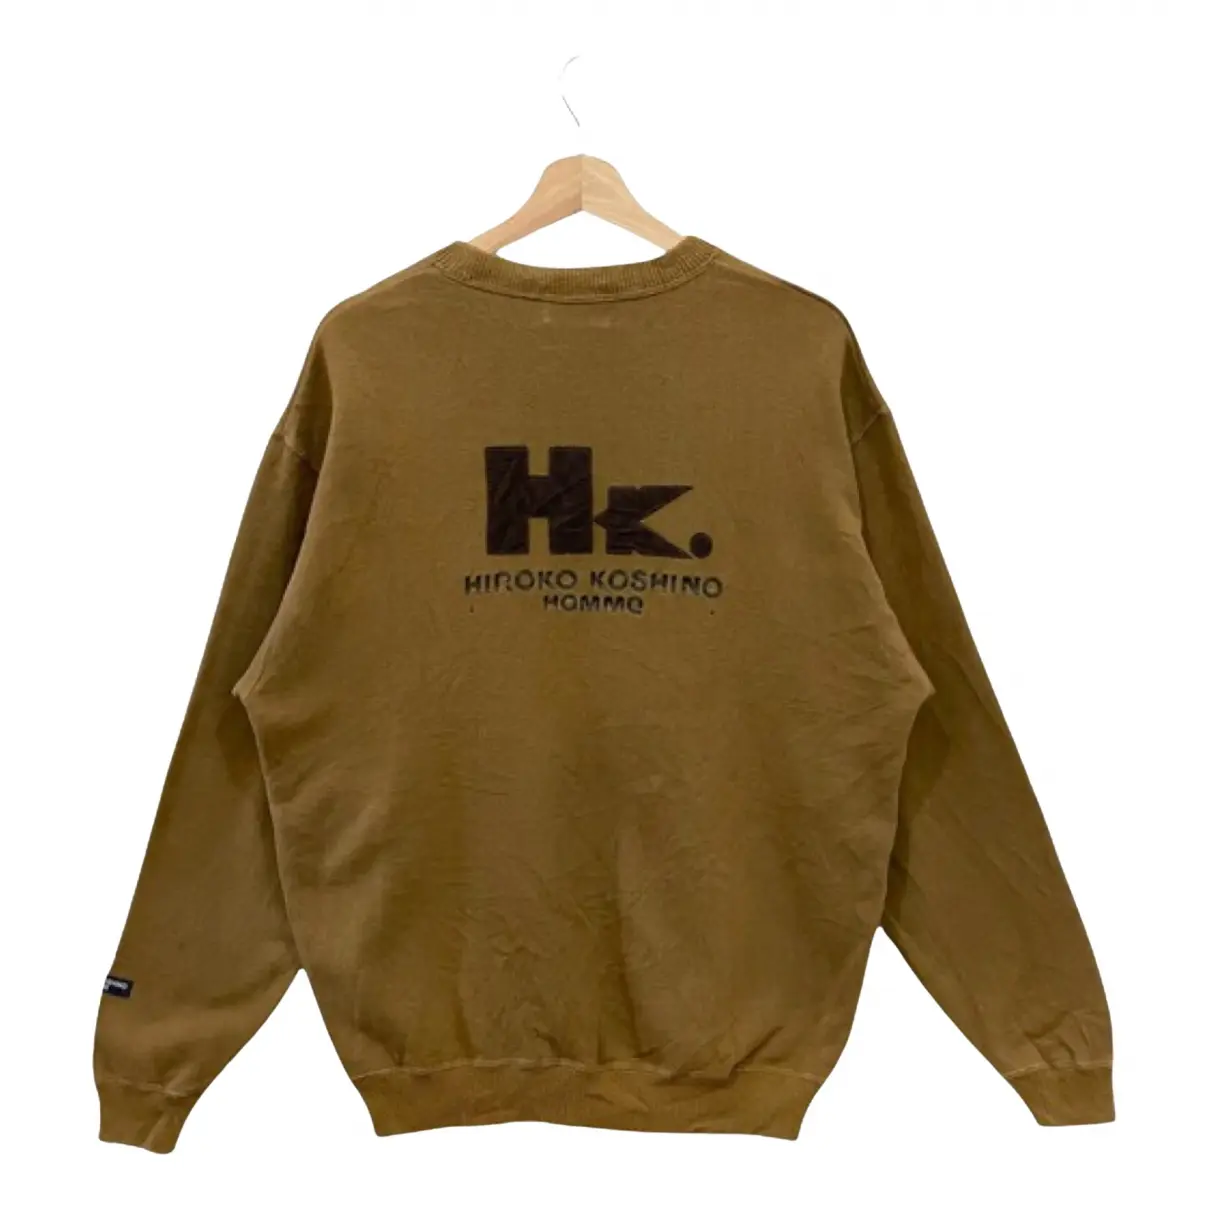 Buy Hiroko Koshino Sweatshirt online - Vintage